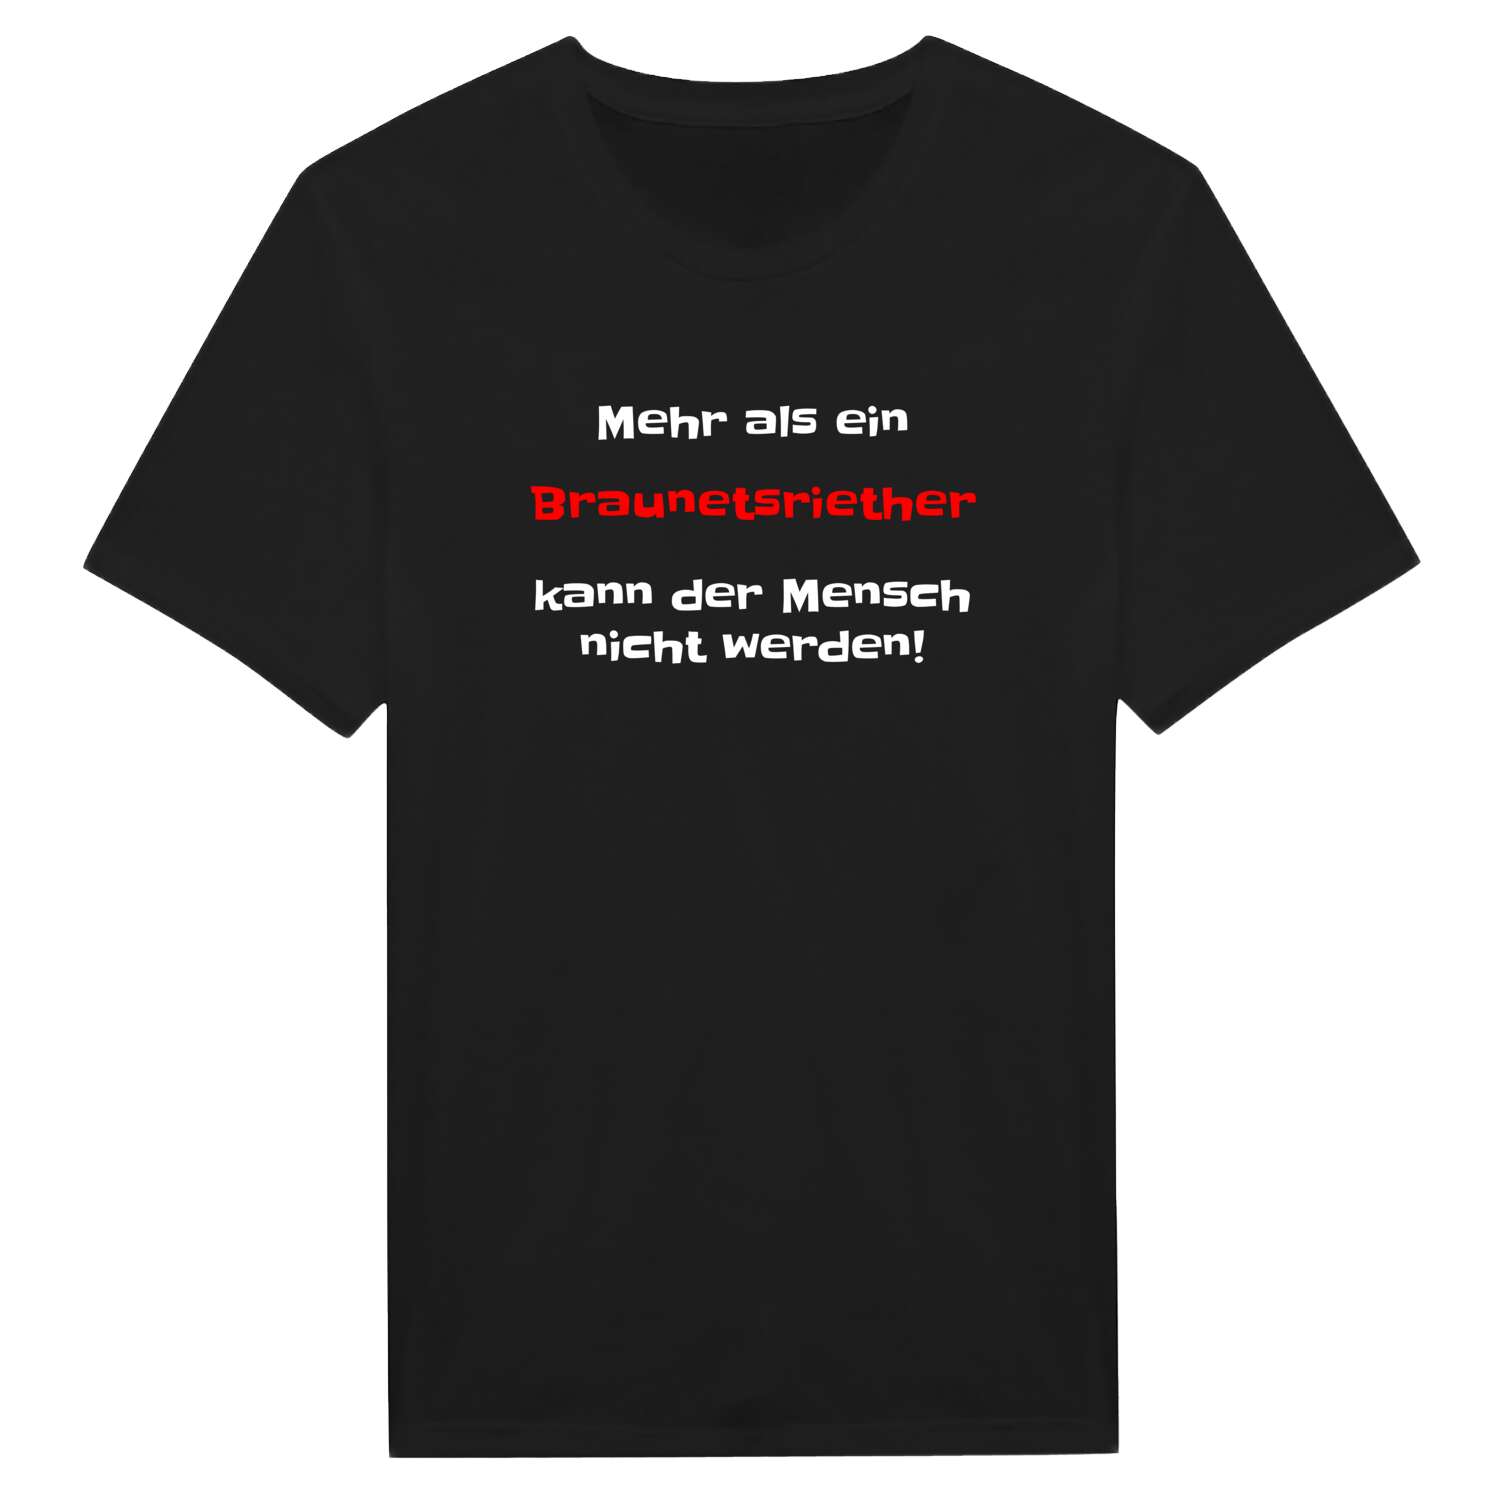 Braunetsrieth T-Shirt »Mehr als ein«